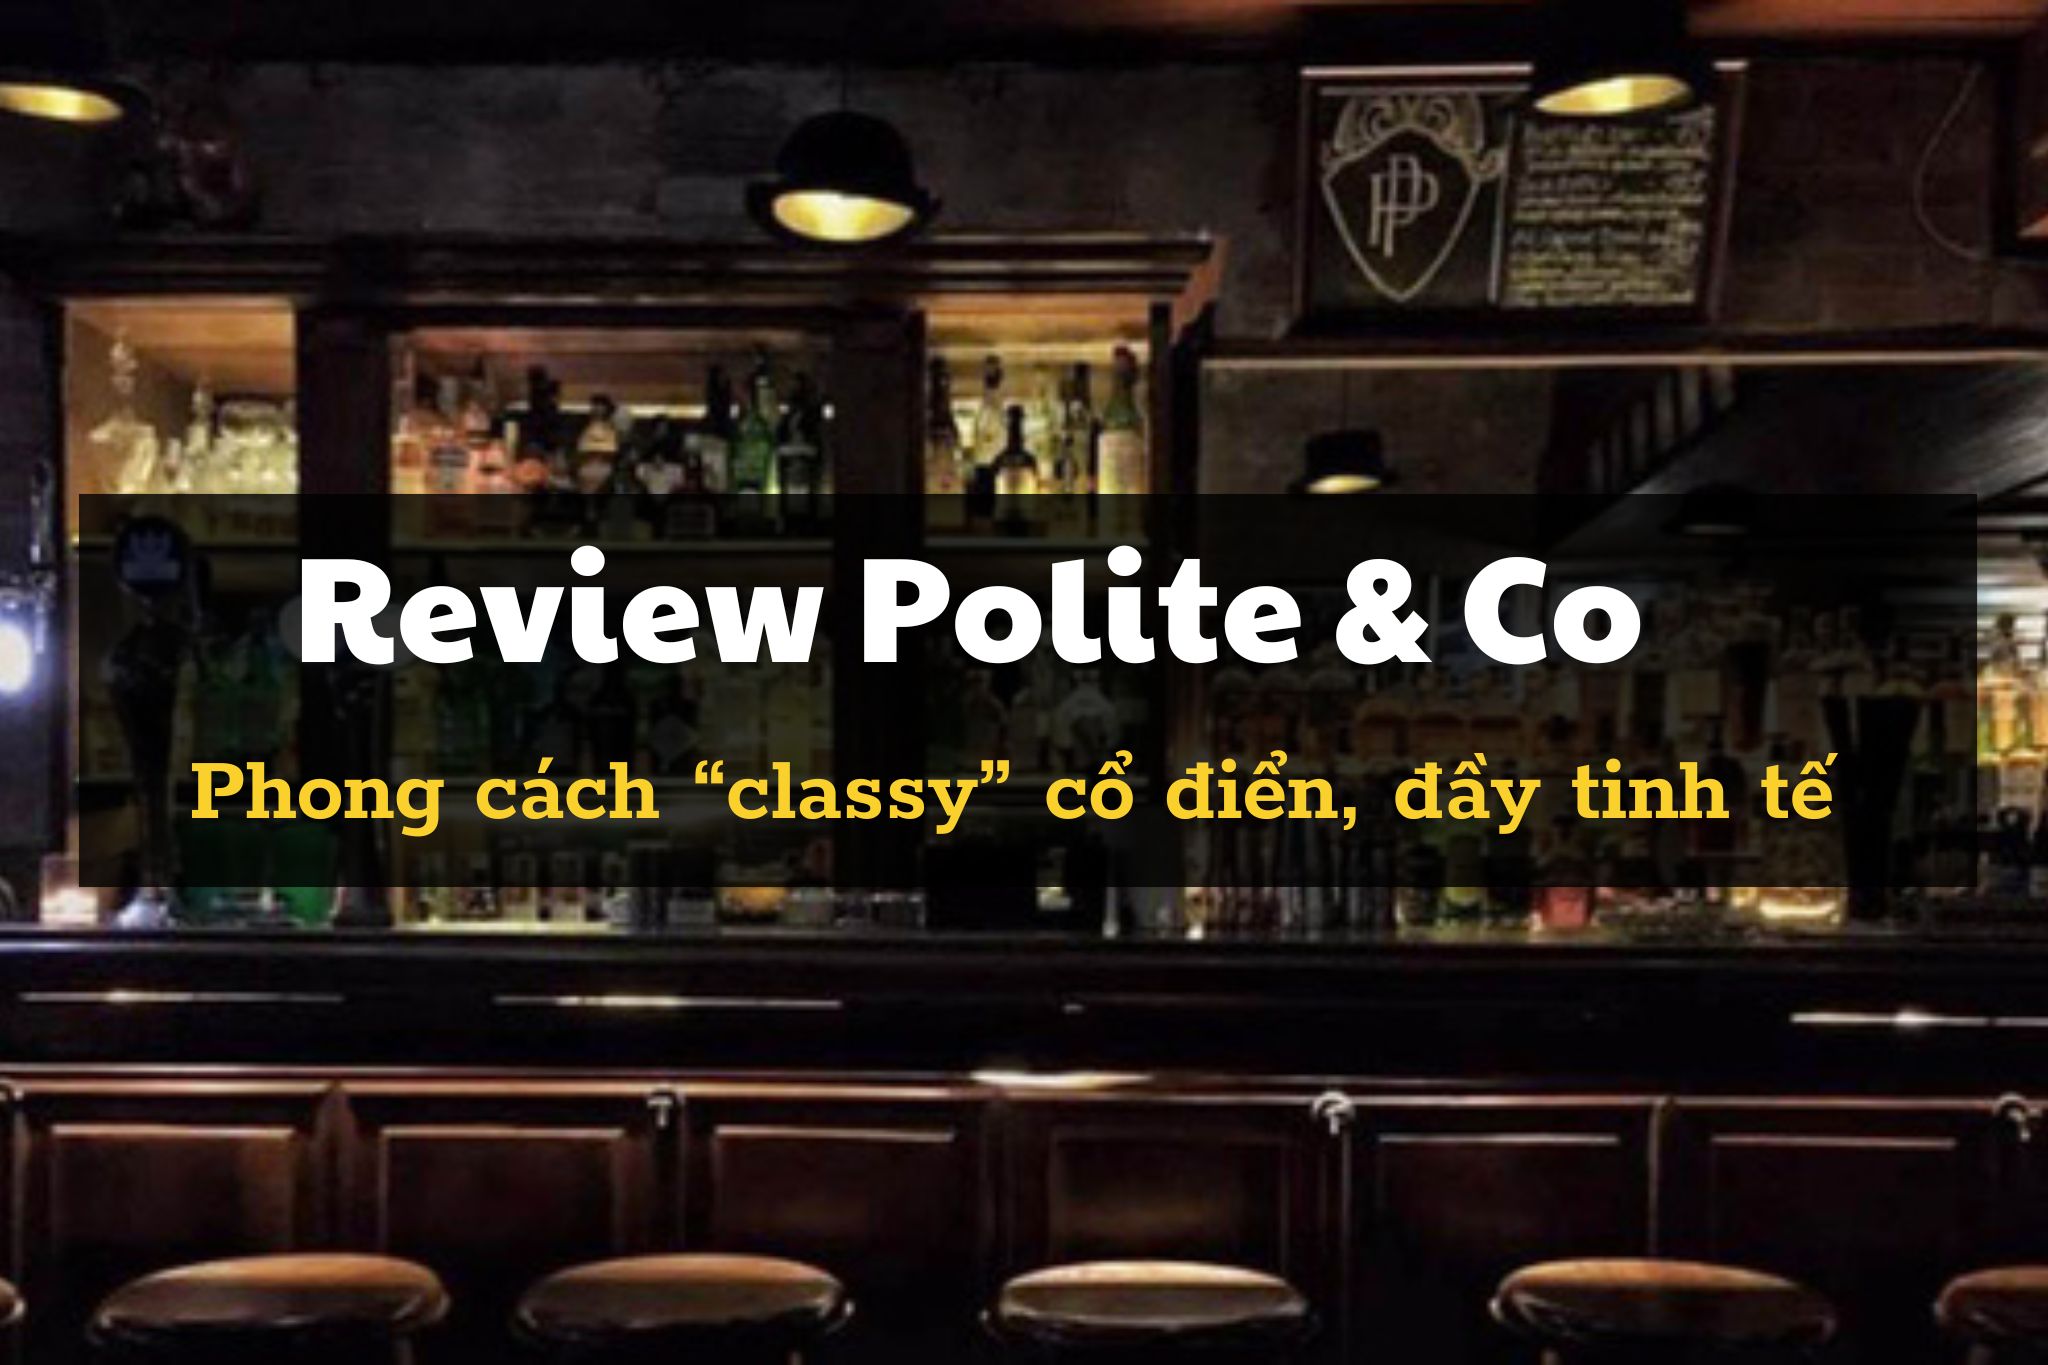 Review Polite & Co - Không gian “classy” đậm chất cổ điển